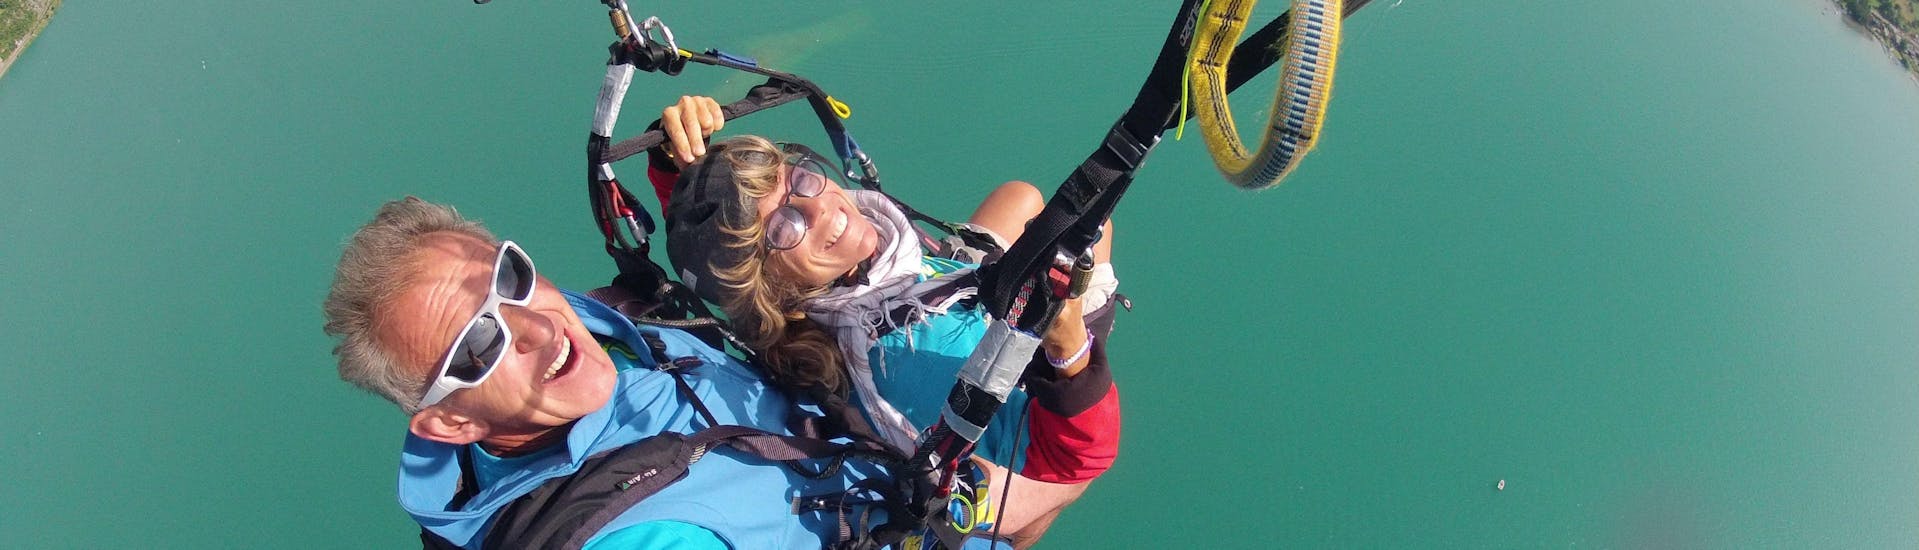 Eine Person nimmt am Tandem-Paragliding am Annecy-See teil - Prestige-Aktivität mit FBI Parapente.